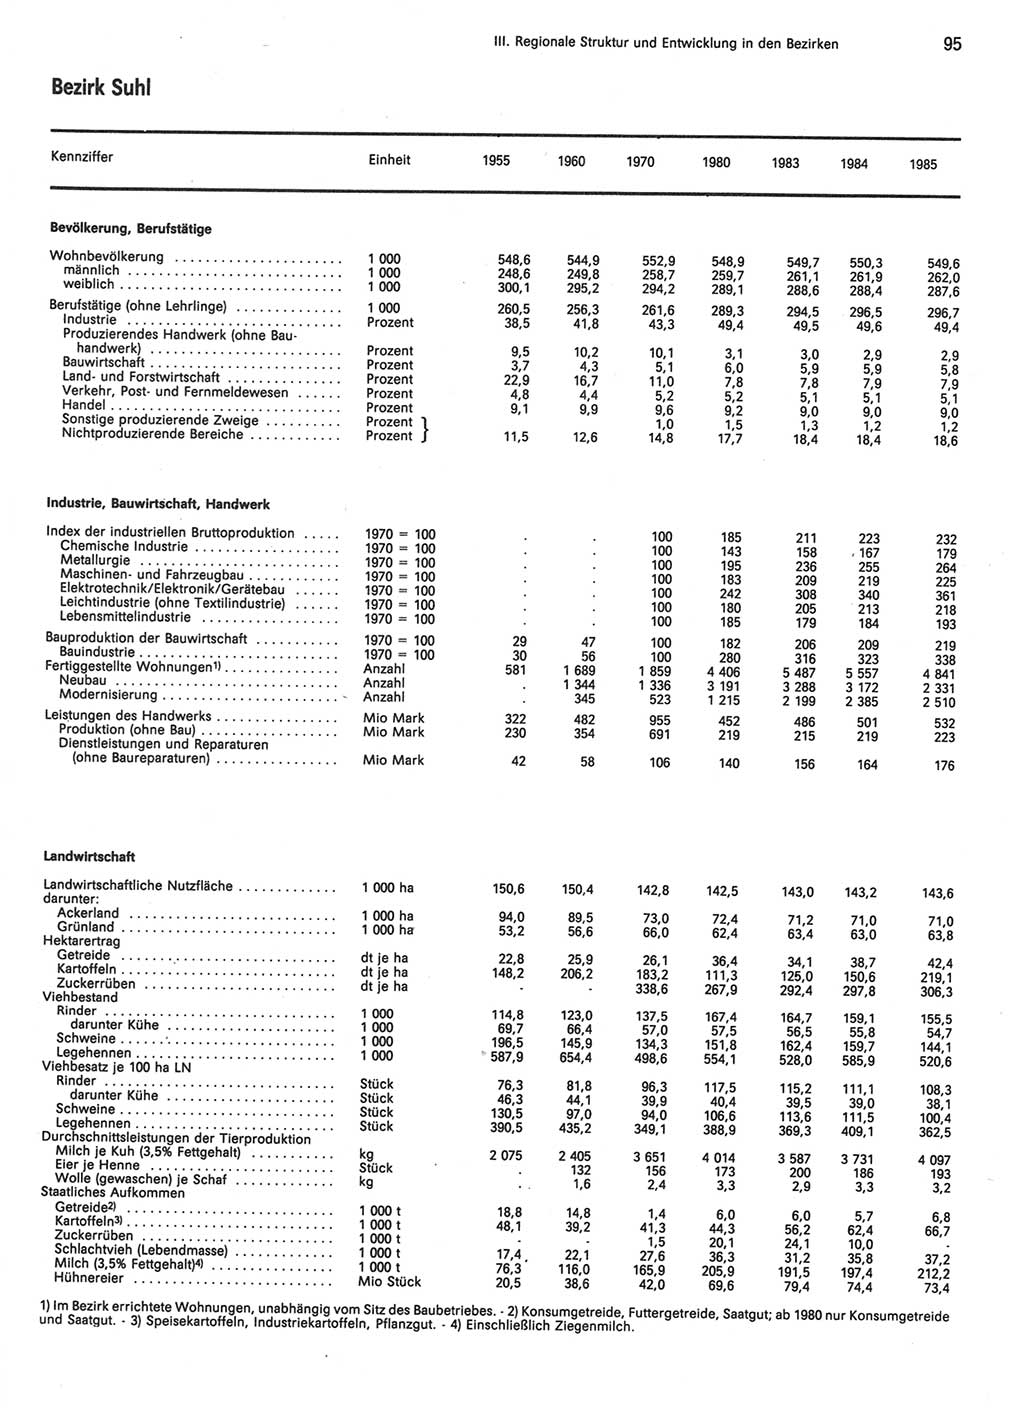 Statistisches Jahrbuch der Deutschen Demokratischen Republik (DDR) 1986, Seite 95 (Stat. Jb. DDR 1986, S. 95)